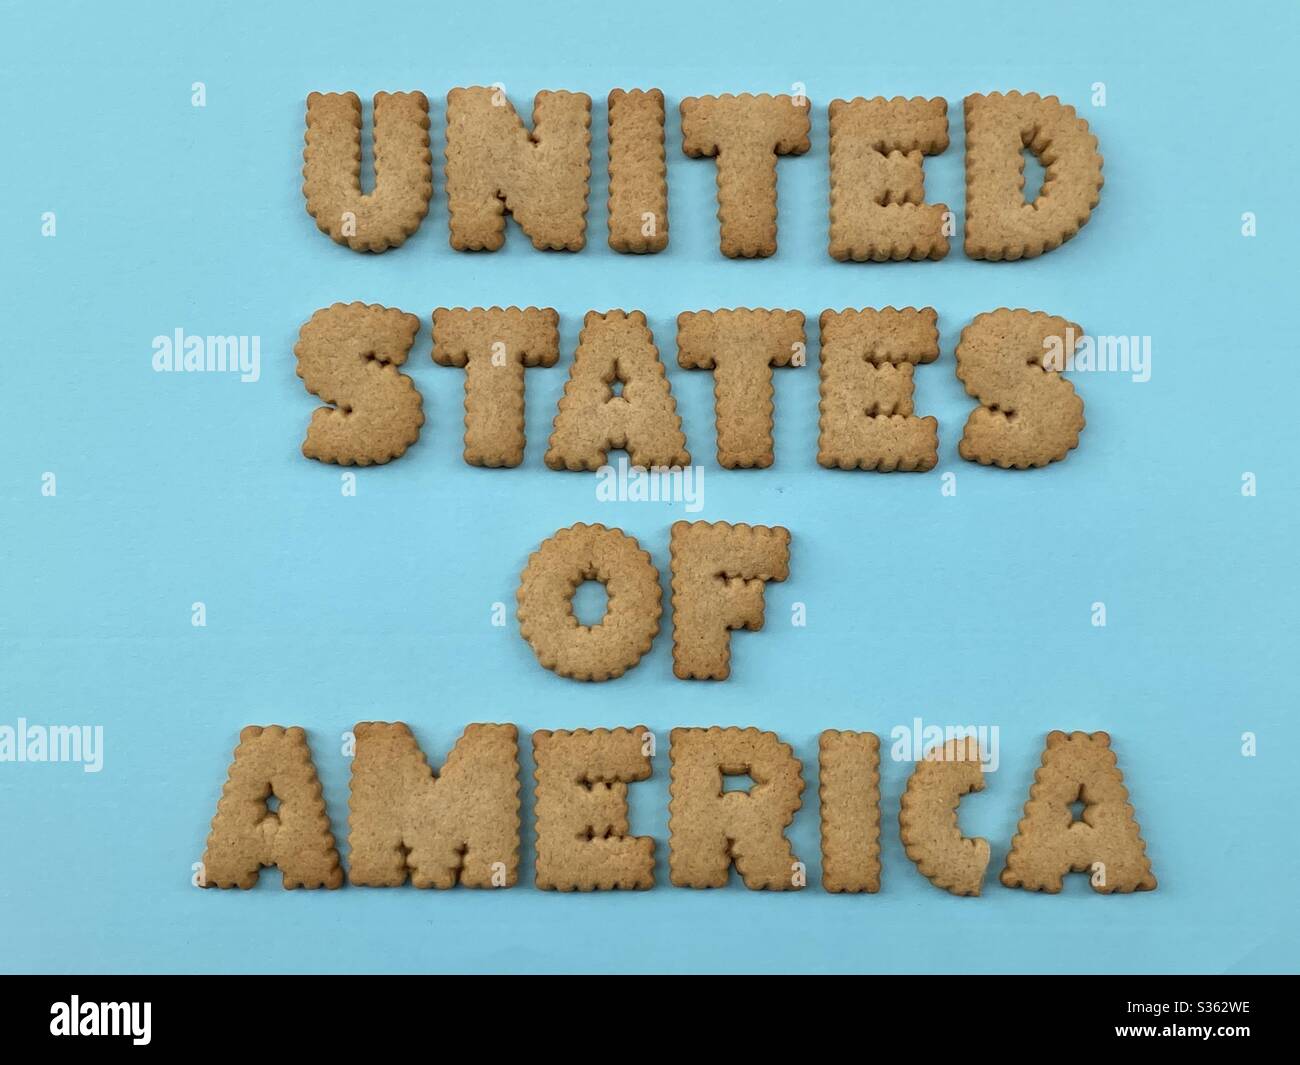 Testo degli Stati Uniti d'America composto da lettere di biscotto su sfondo blu Foto Stock